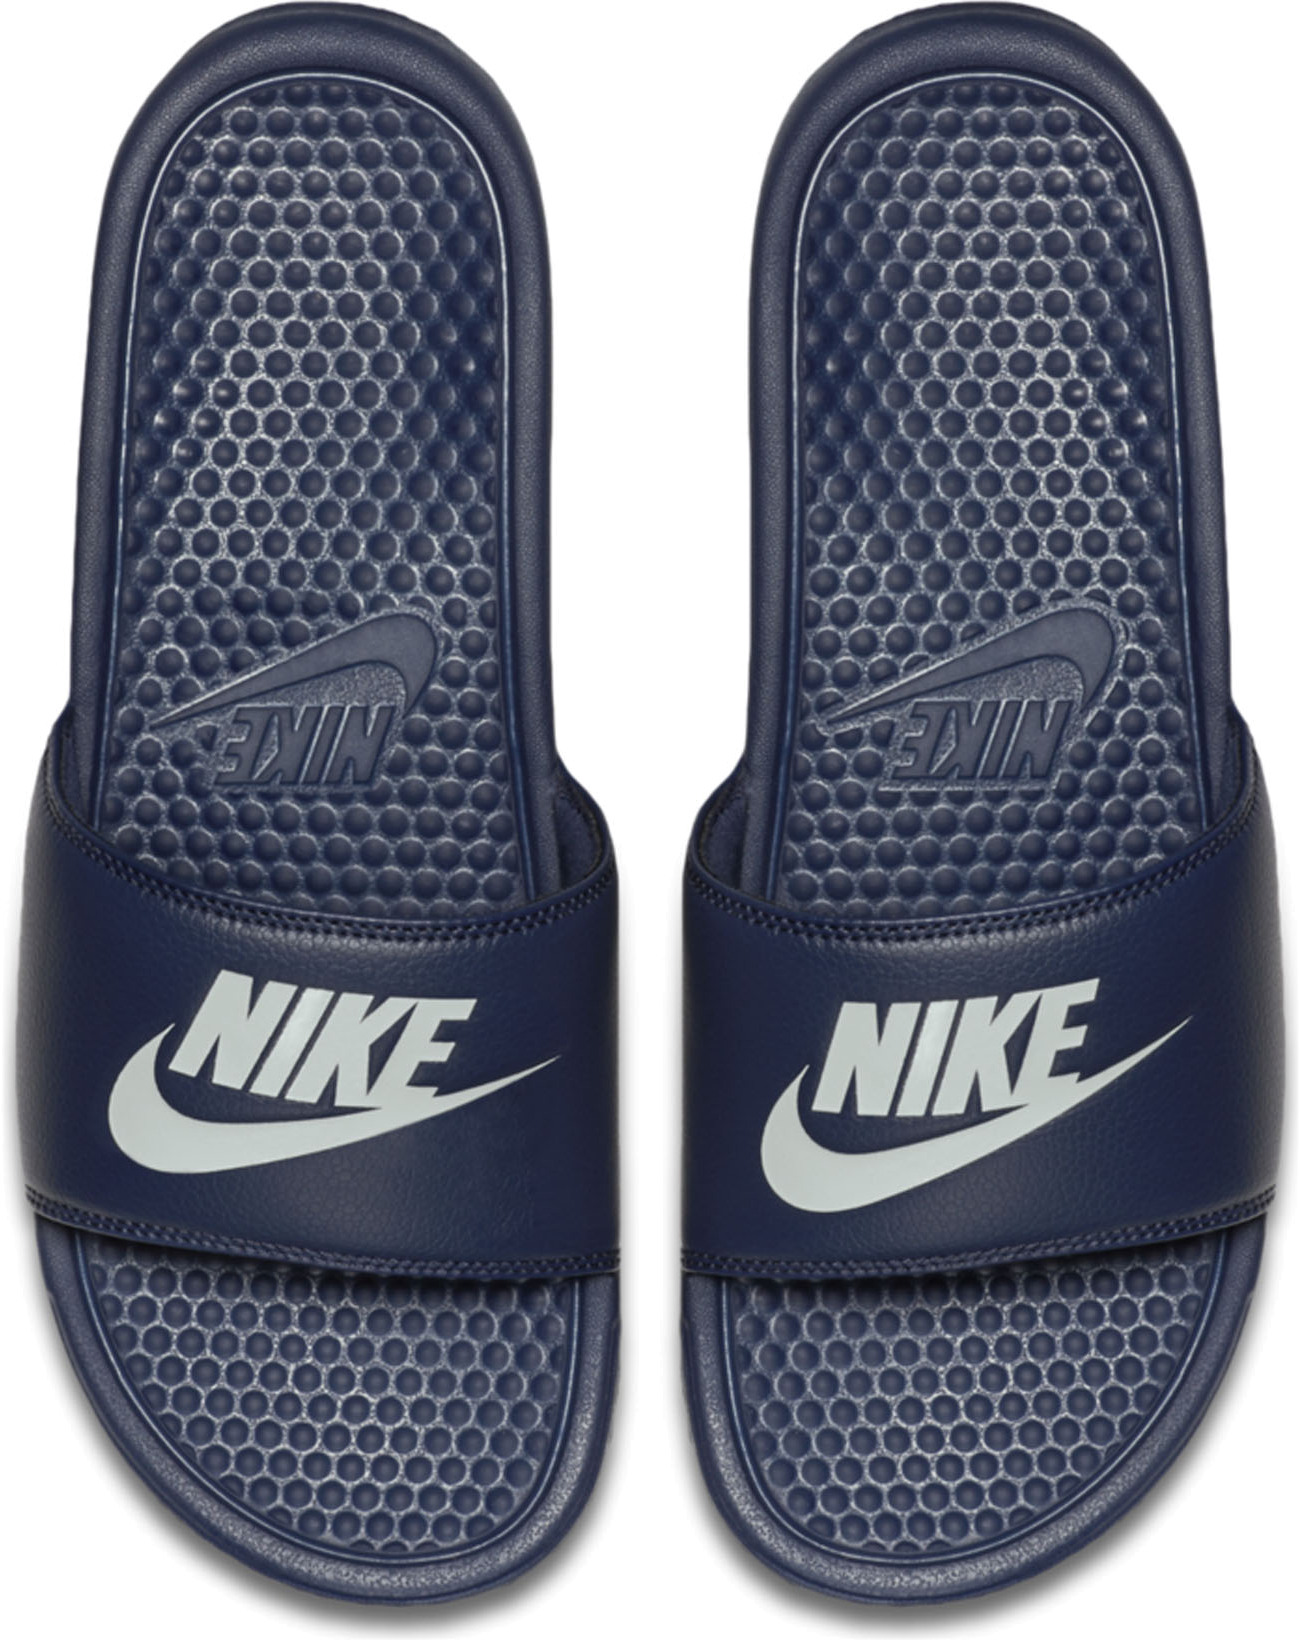 Мужские сланцы Nike Benassi 343880-403